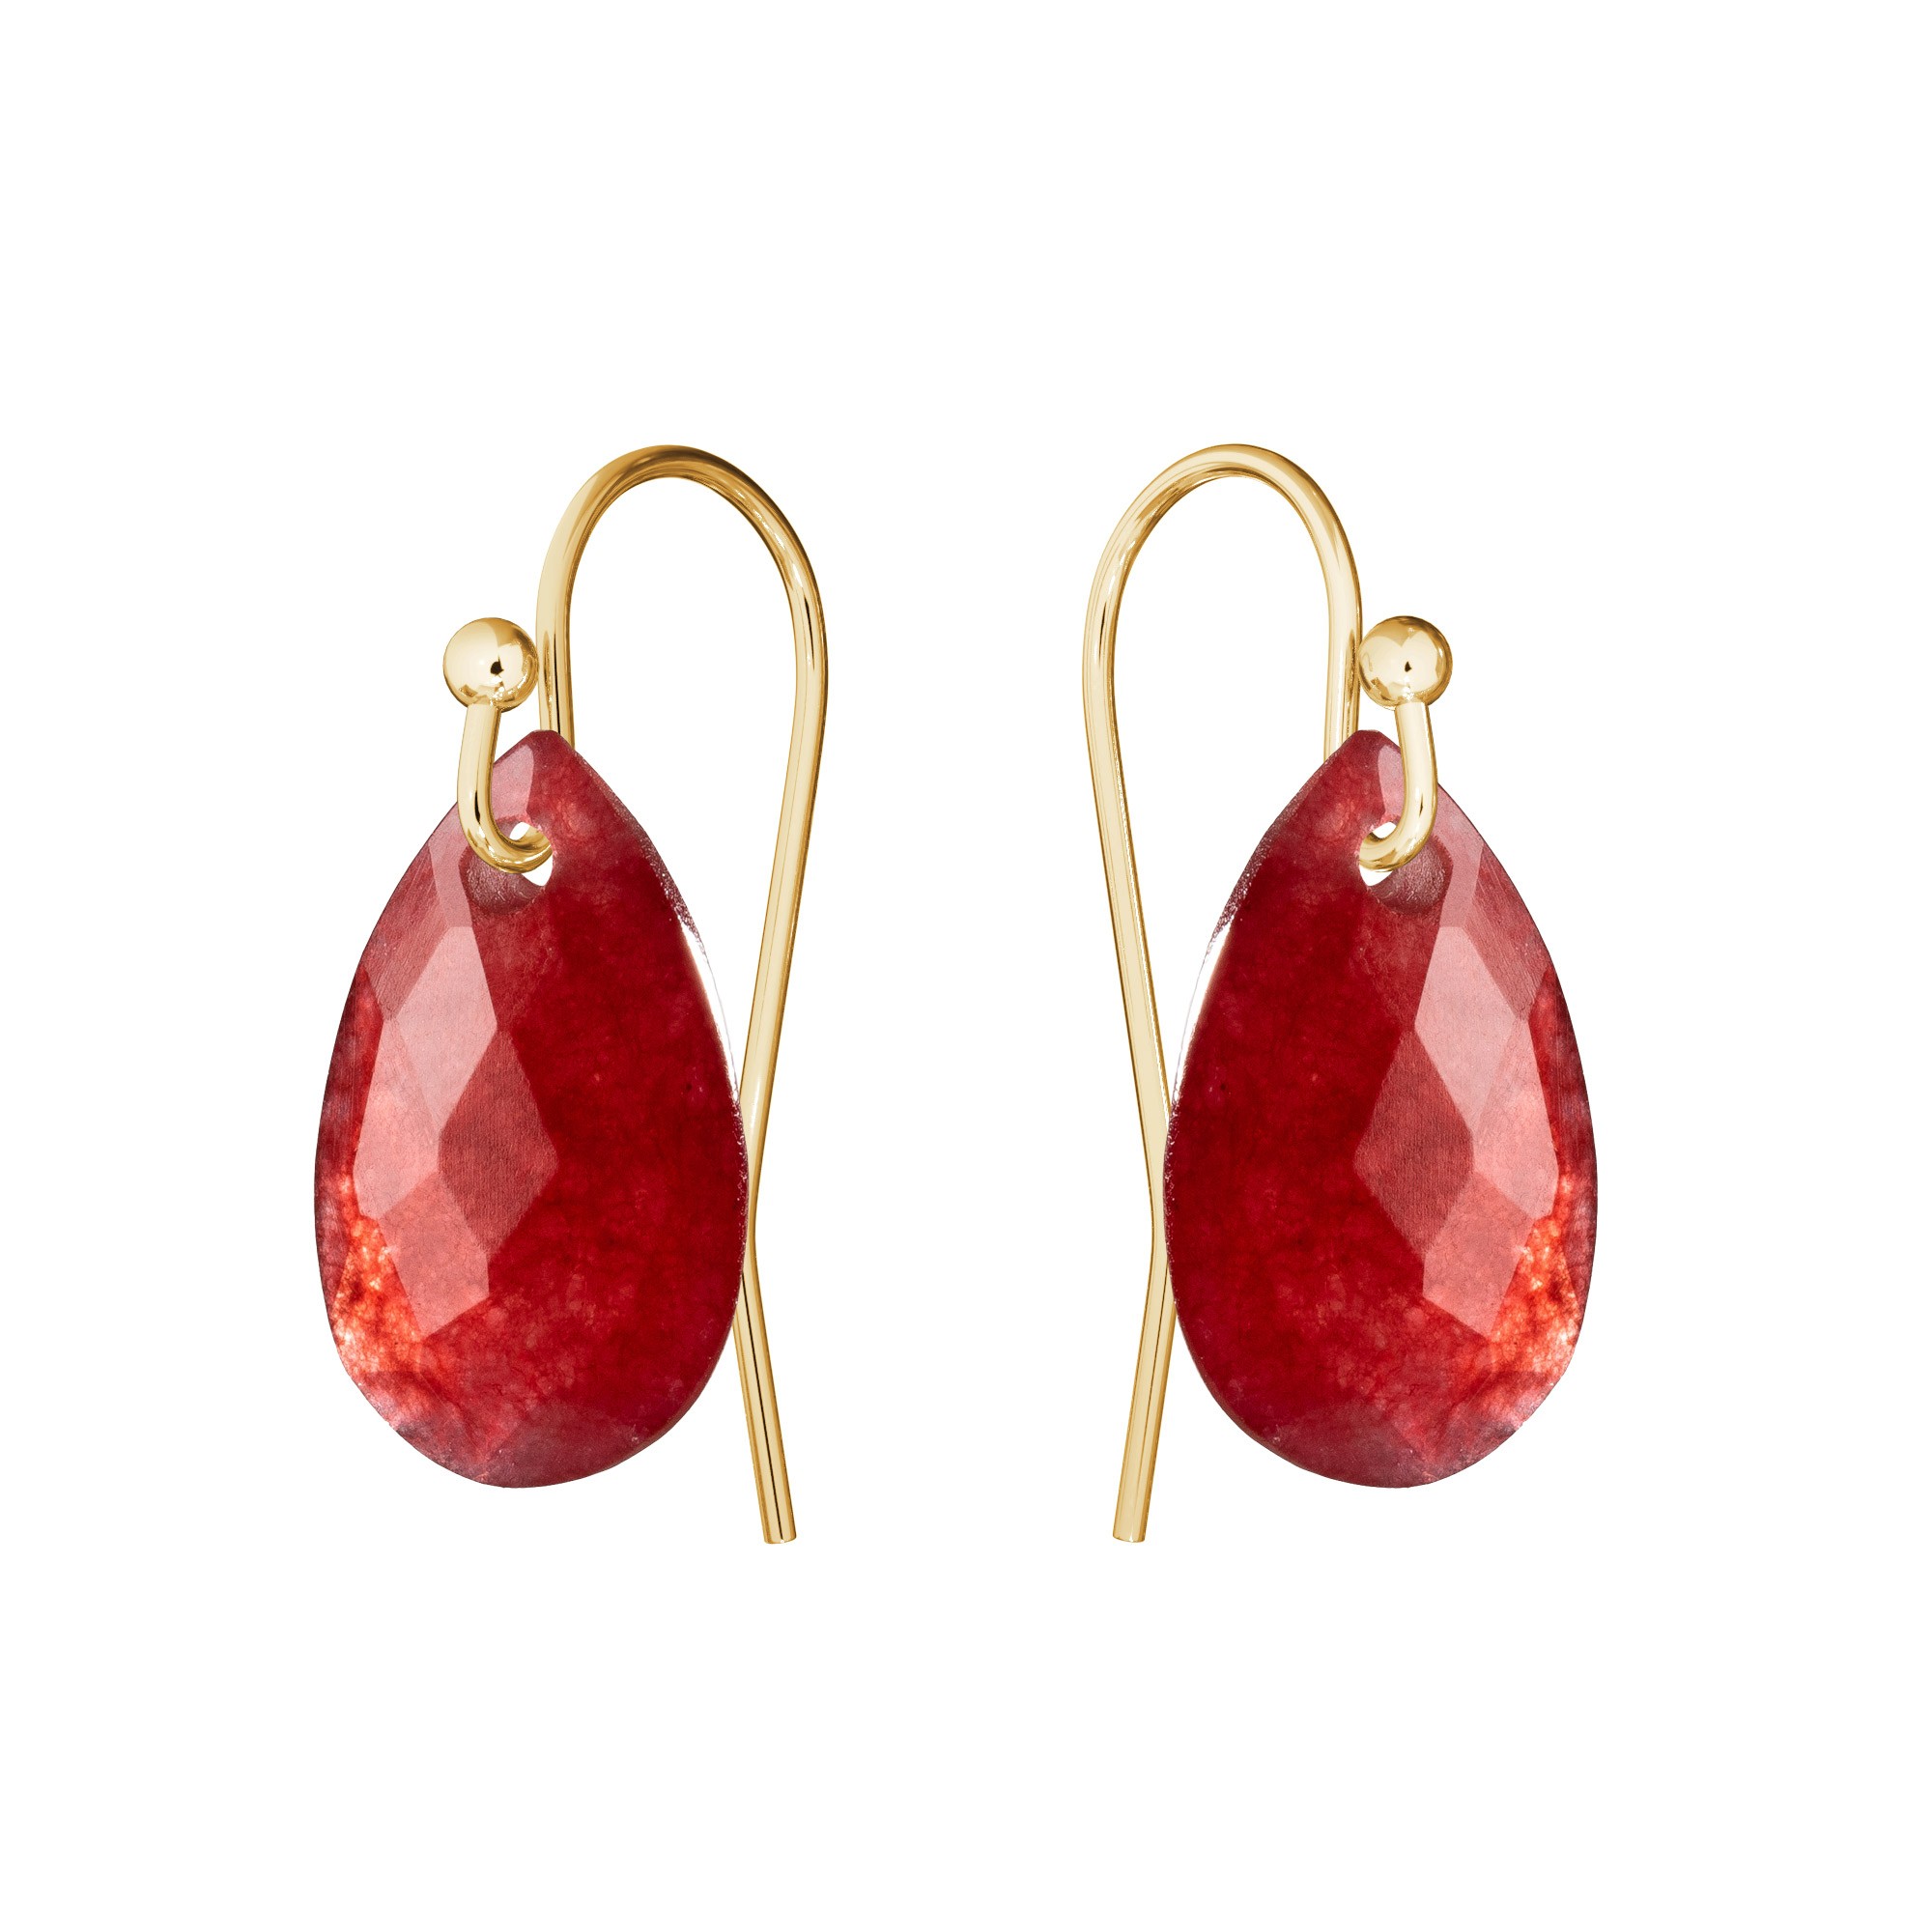 Ohrringe mit natur Gavbari stein, gold 585